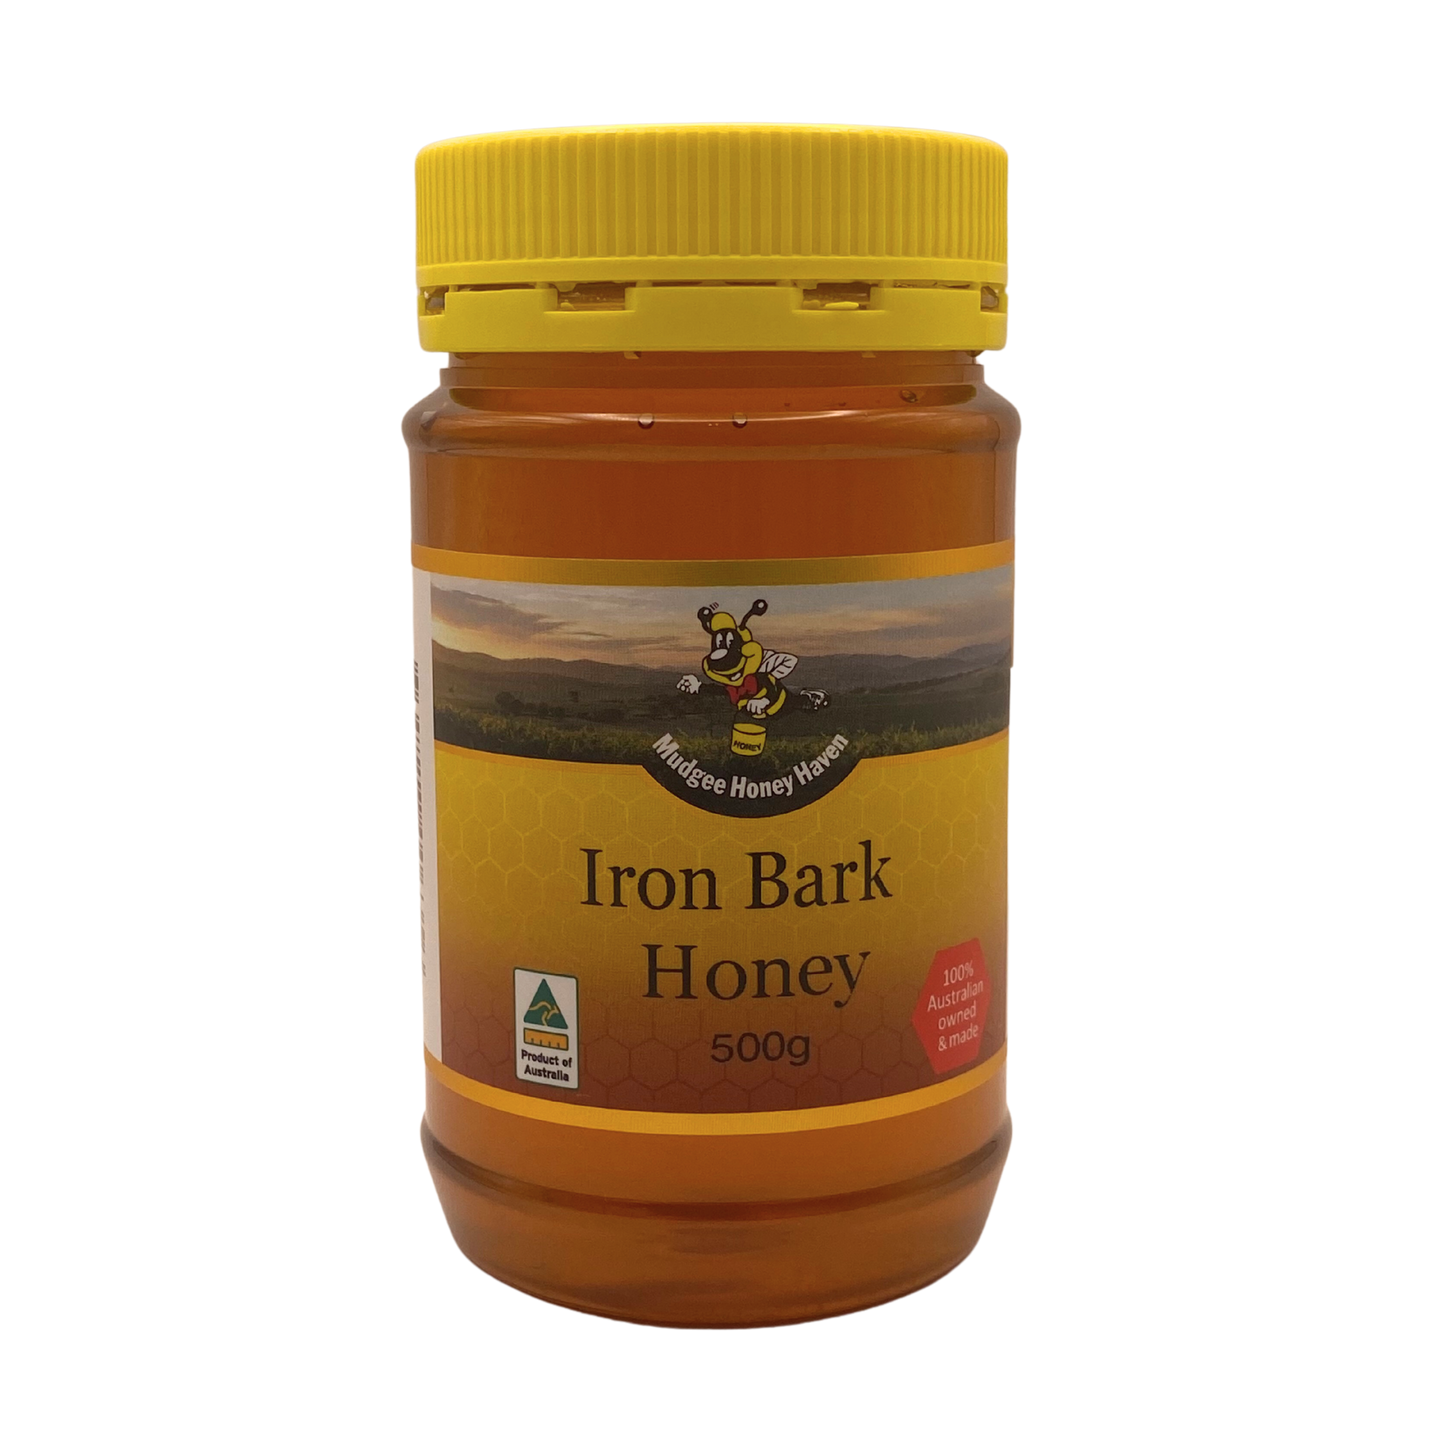 Mudgee Honey Haven - Iron Bark Honey 500g